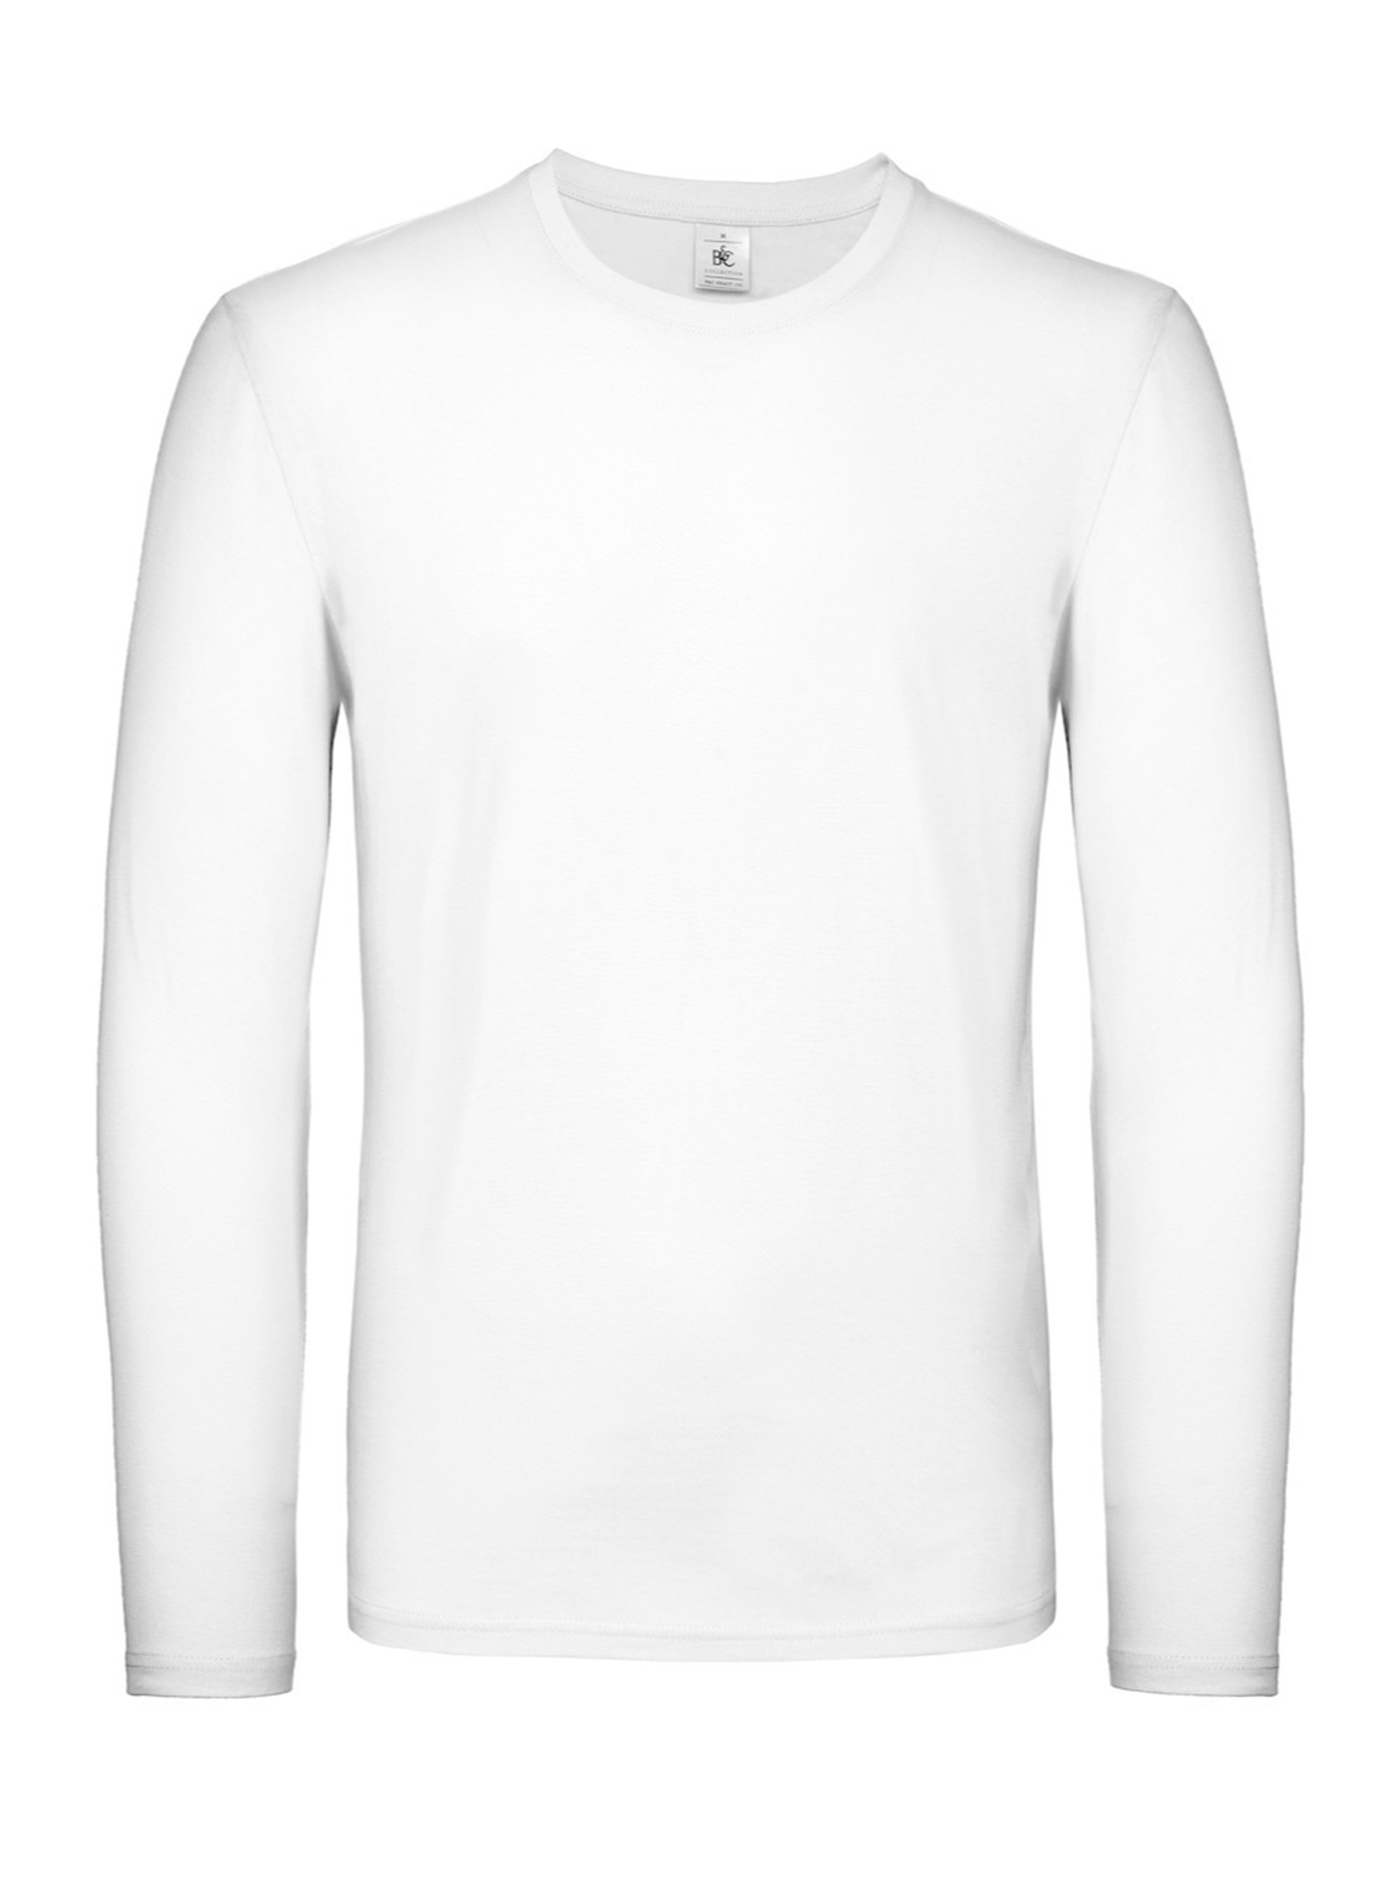 Tričko s dlouhým rukávem B&C Collection - Bílá L